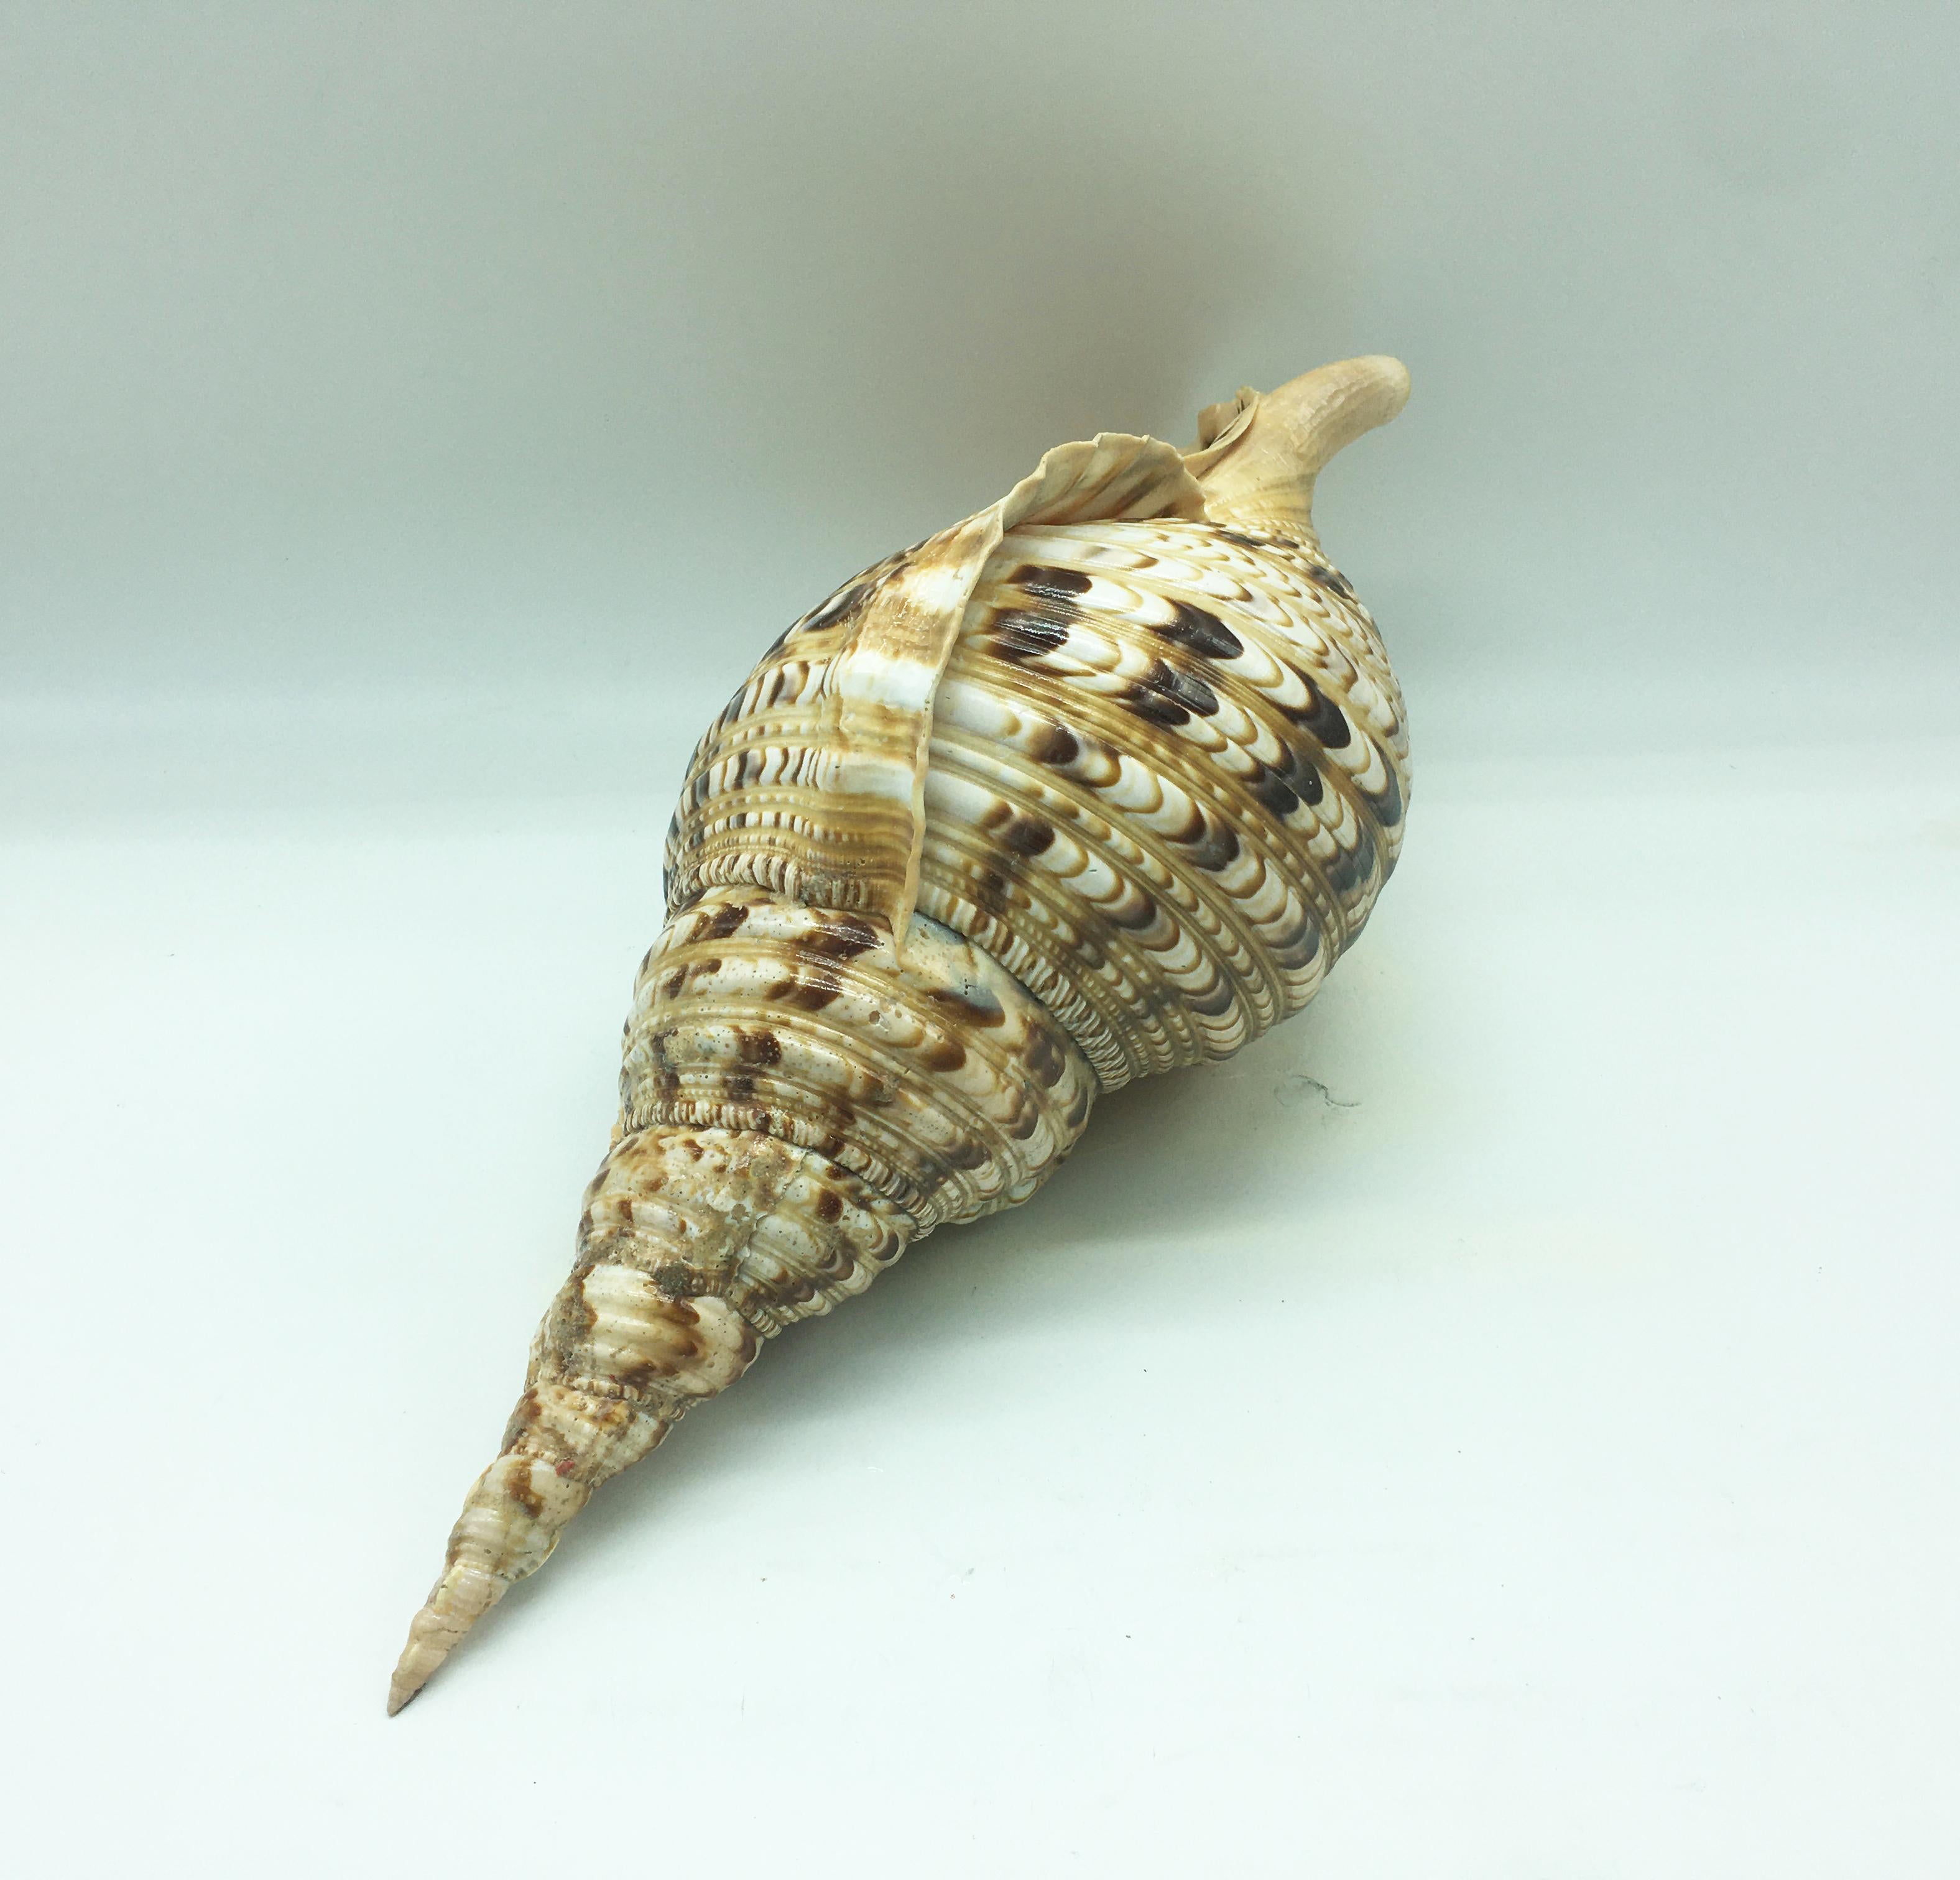 triton snail